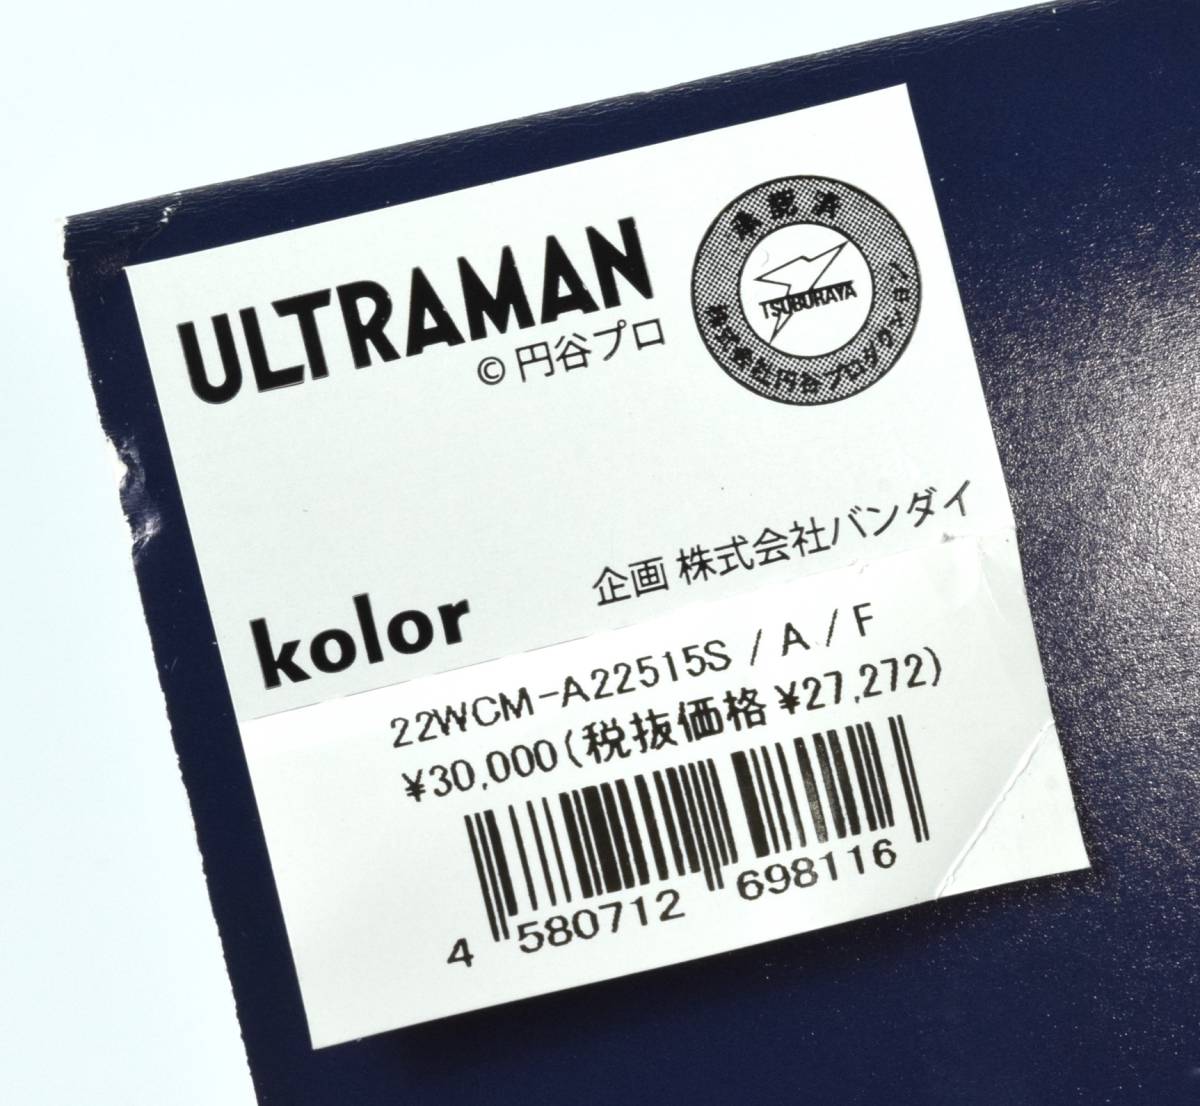  новый товар ограничение нераспечатанный KOLOR & ULTRAMAN цвет Ultraman maru солнечный производства sofvi 350 футболка имеется Logo Tee Set фигурка полная высота 23.5cm